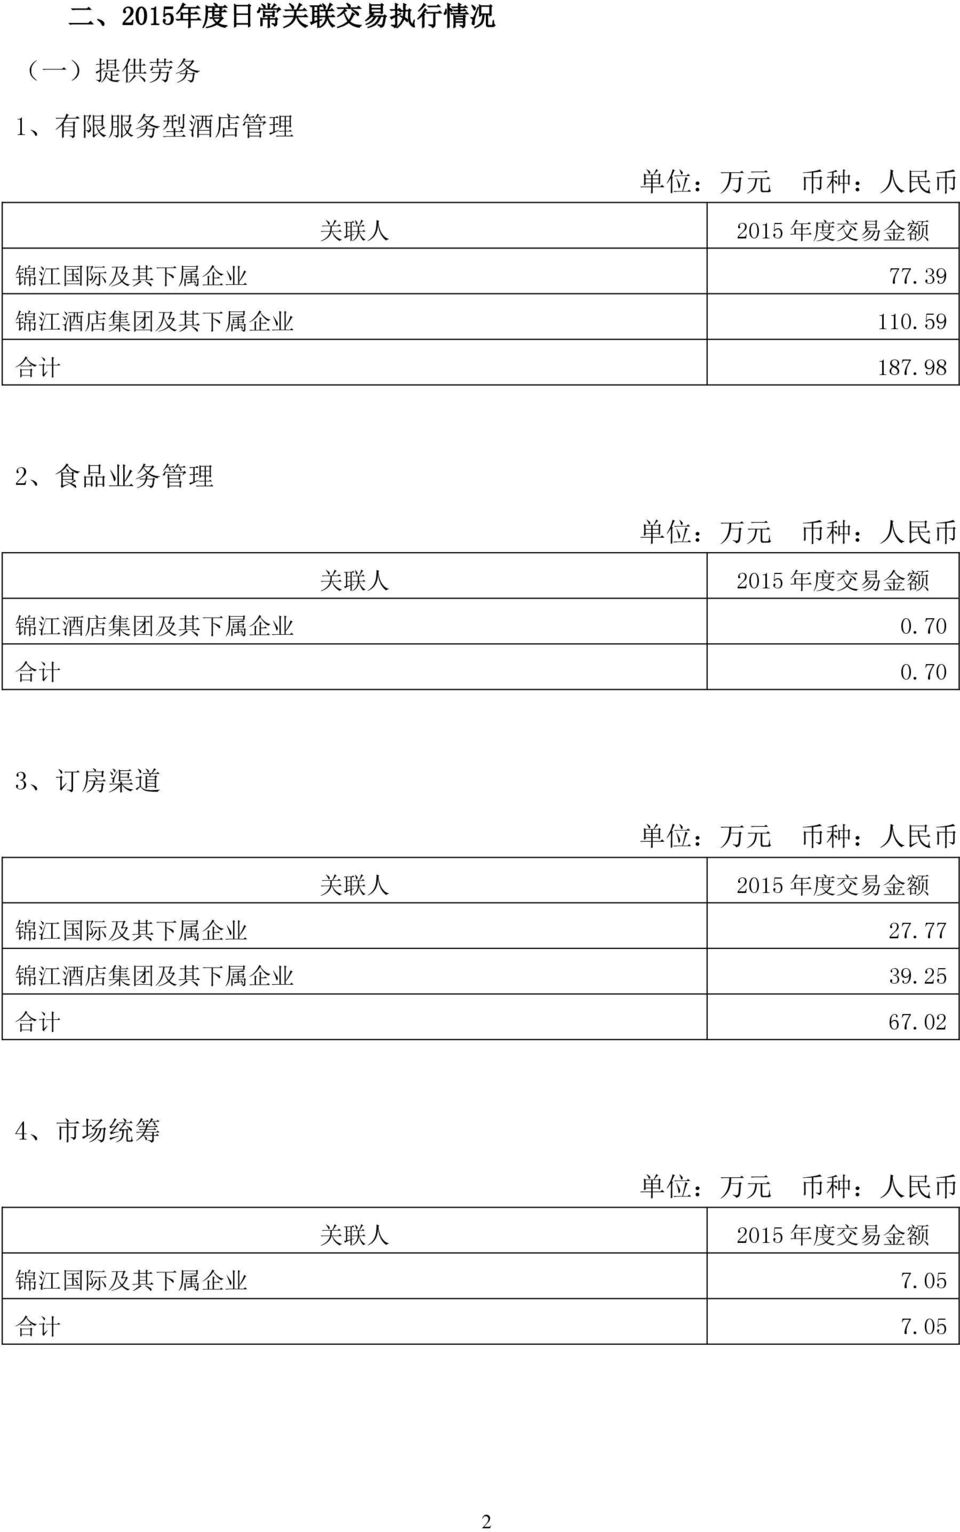 98 2 食 品 业 务 管 理 锦 江 酒 店 集 团 及 其 下 属 企 业 0.70 合 计 0.